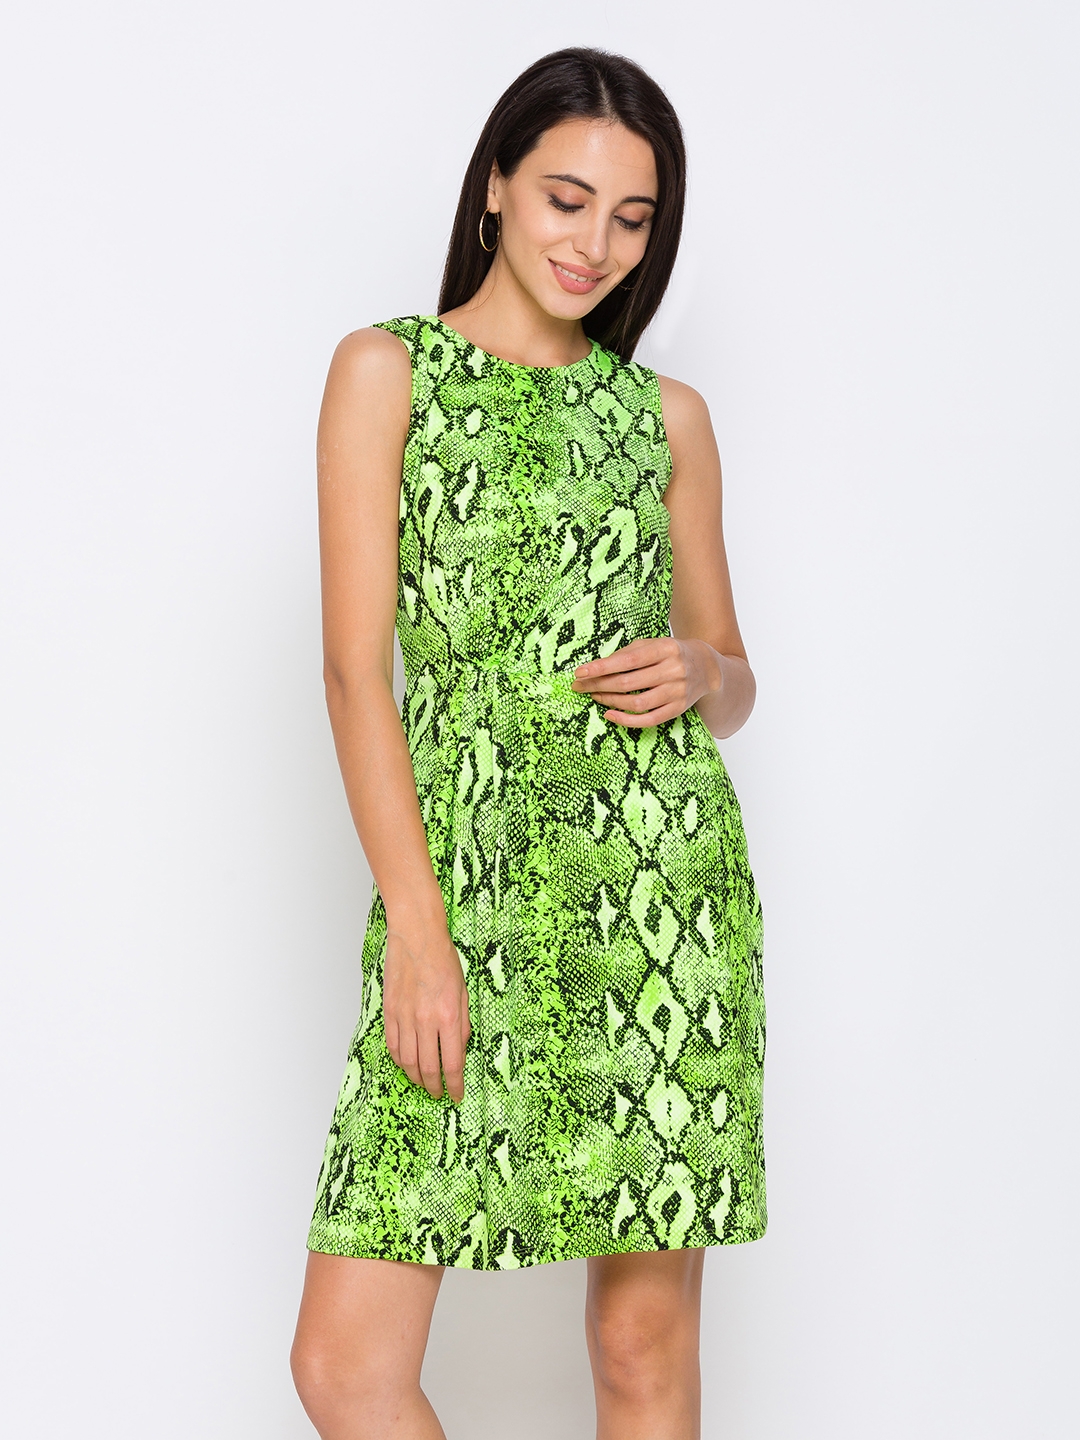 globus | Green Printed Dresses